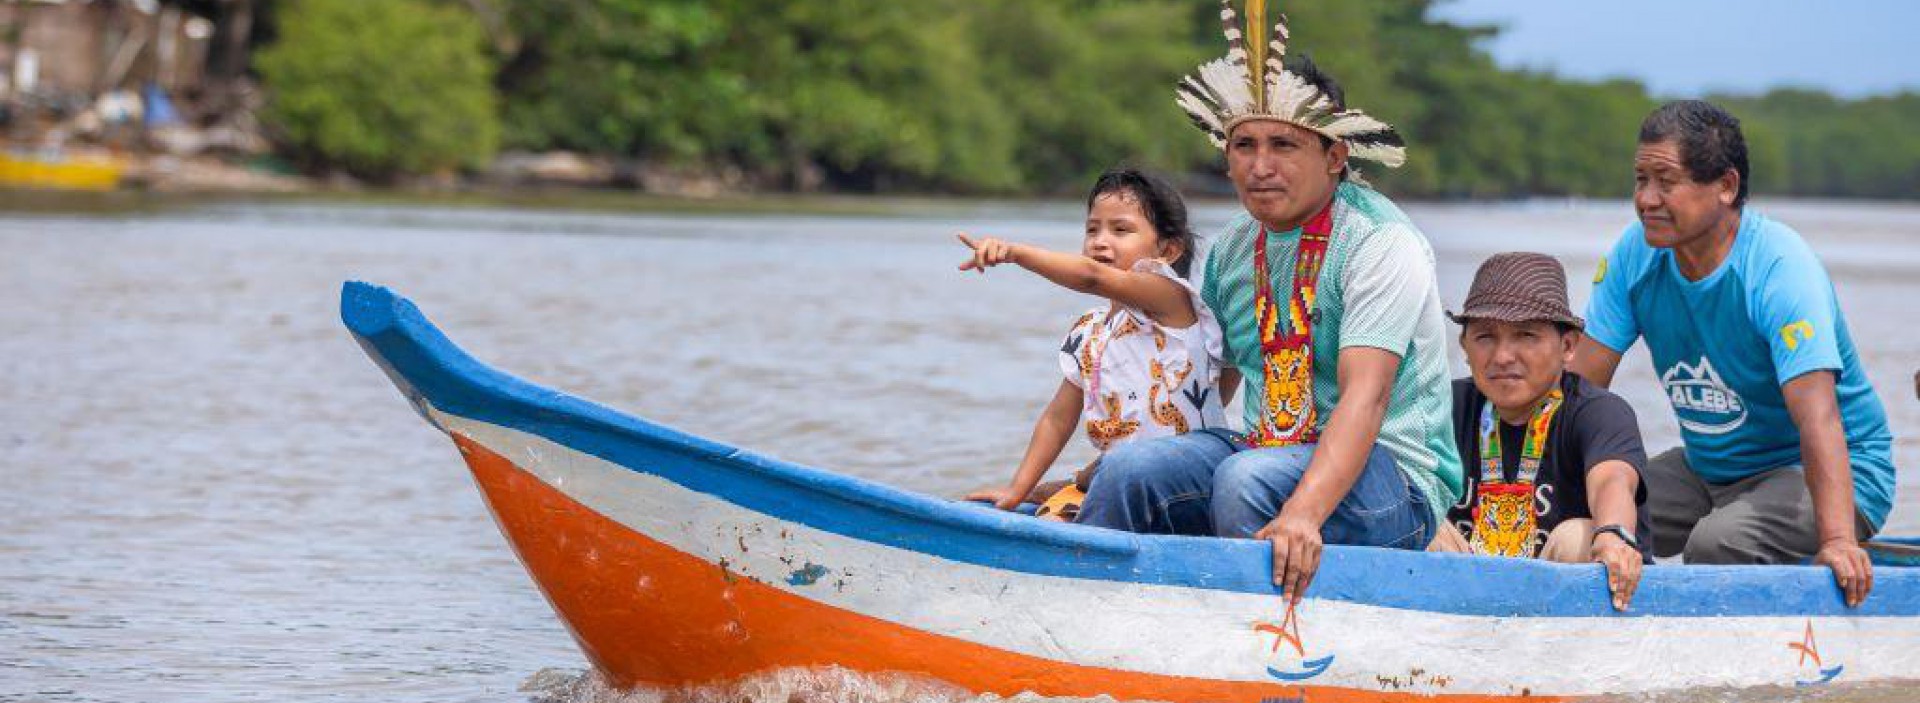 Em Maceió, indígenas Warao recebem barco da prefeitura para reconstruírem suas vidas através da pesca